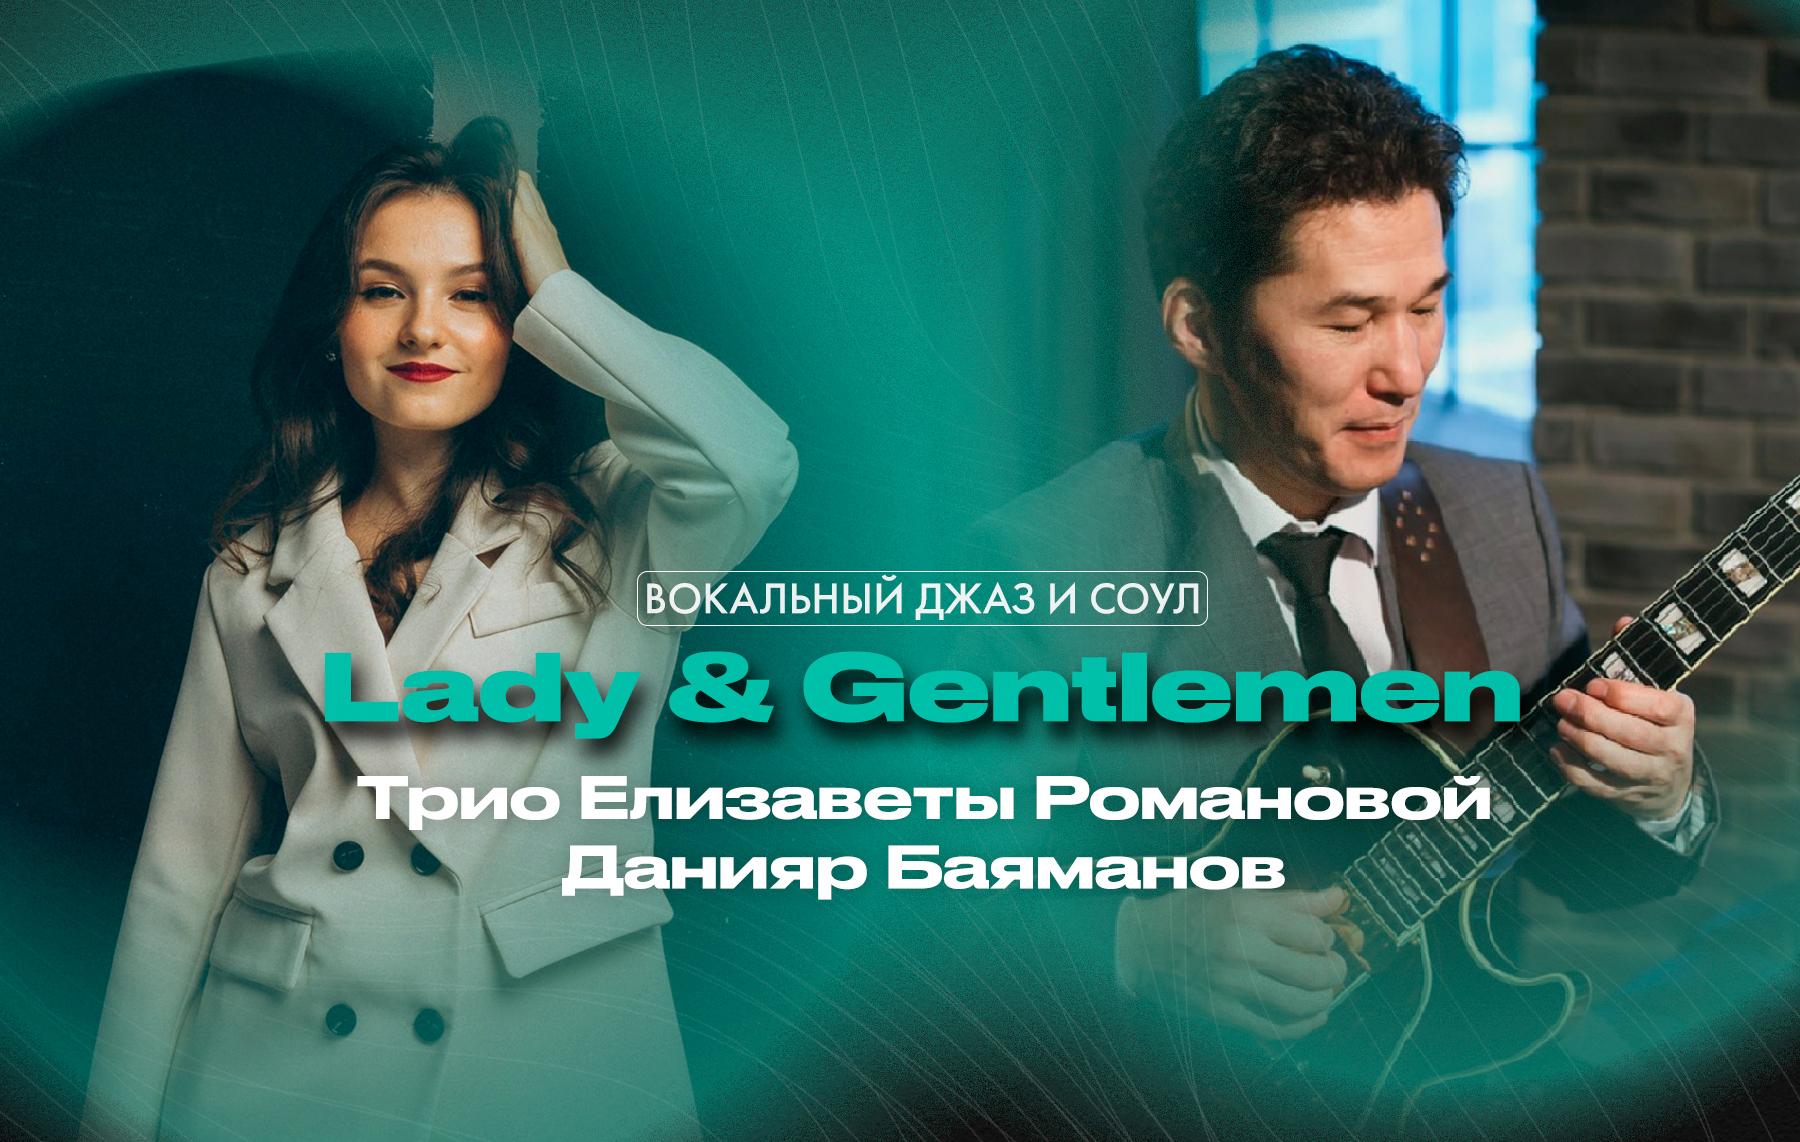 Lady & Gentlemen – Вокальный джаз и соул